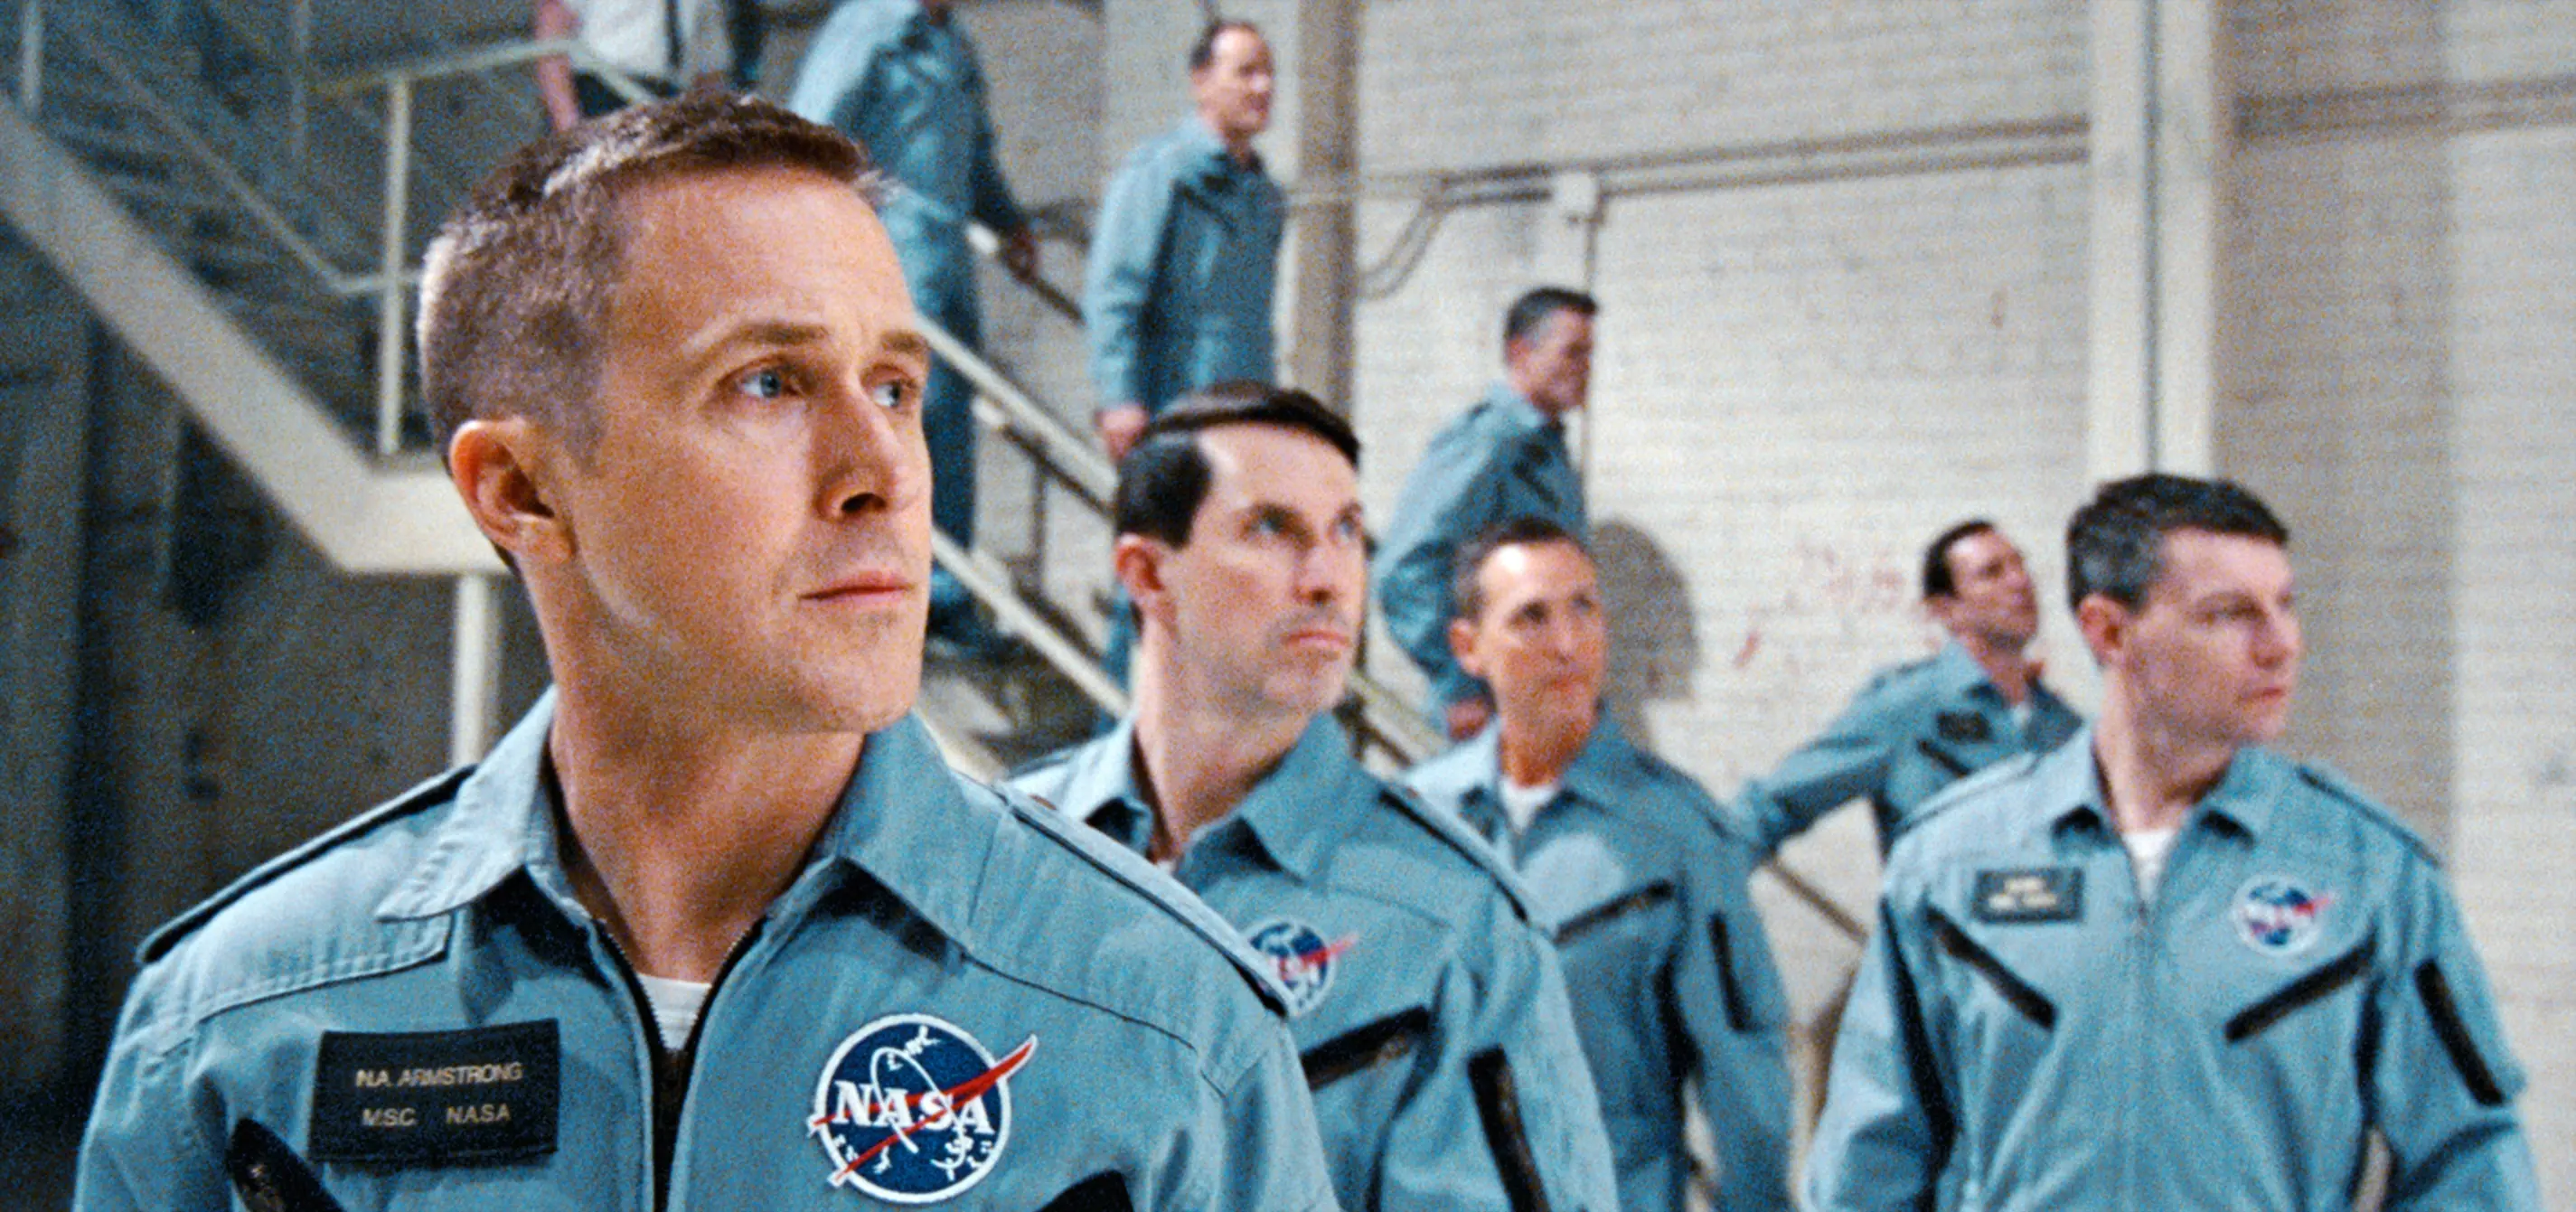 Recenze: První člověk - Ryan Gosling letí do vesmíru